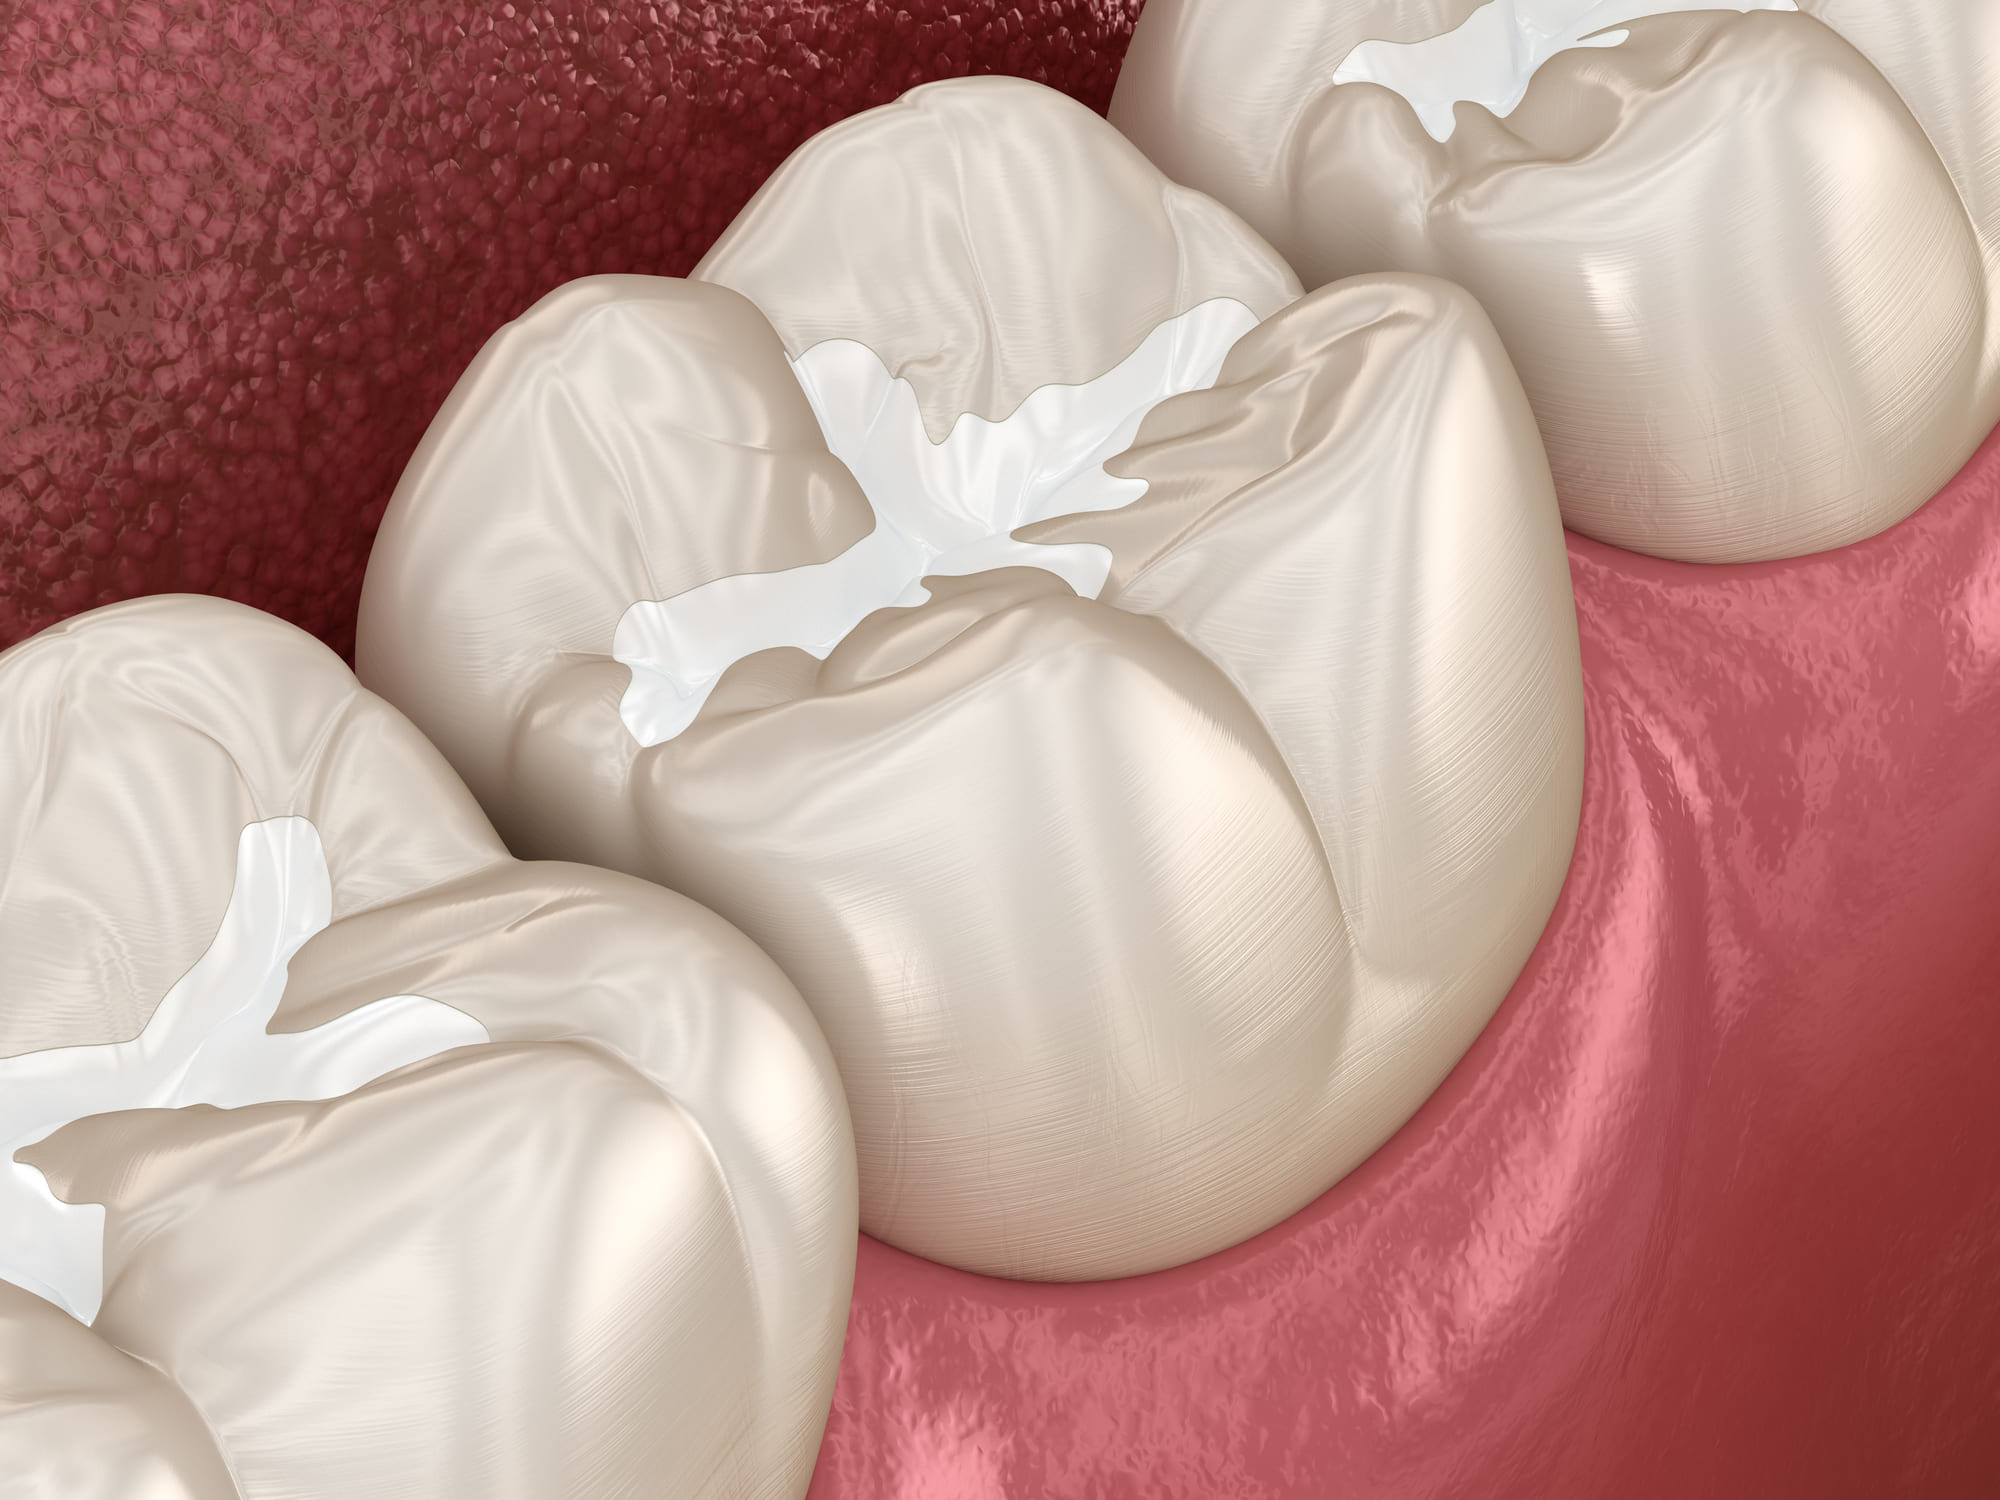 Selladores dentales para consulta dental